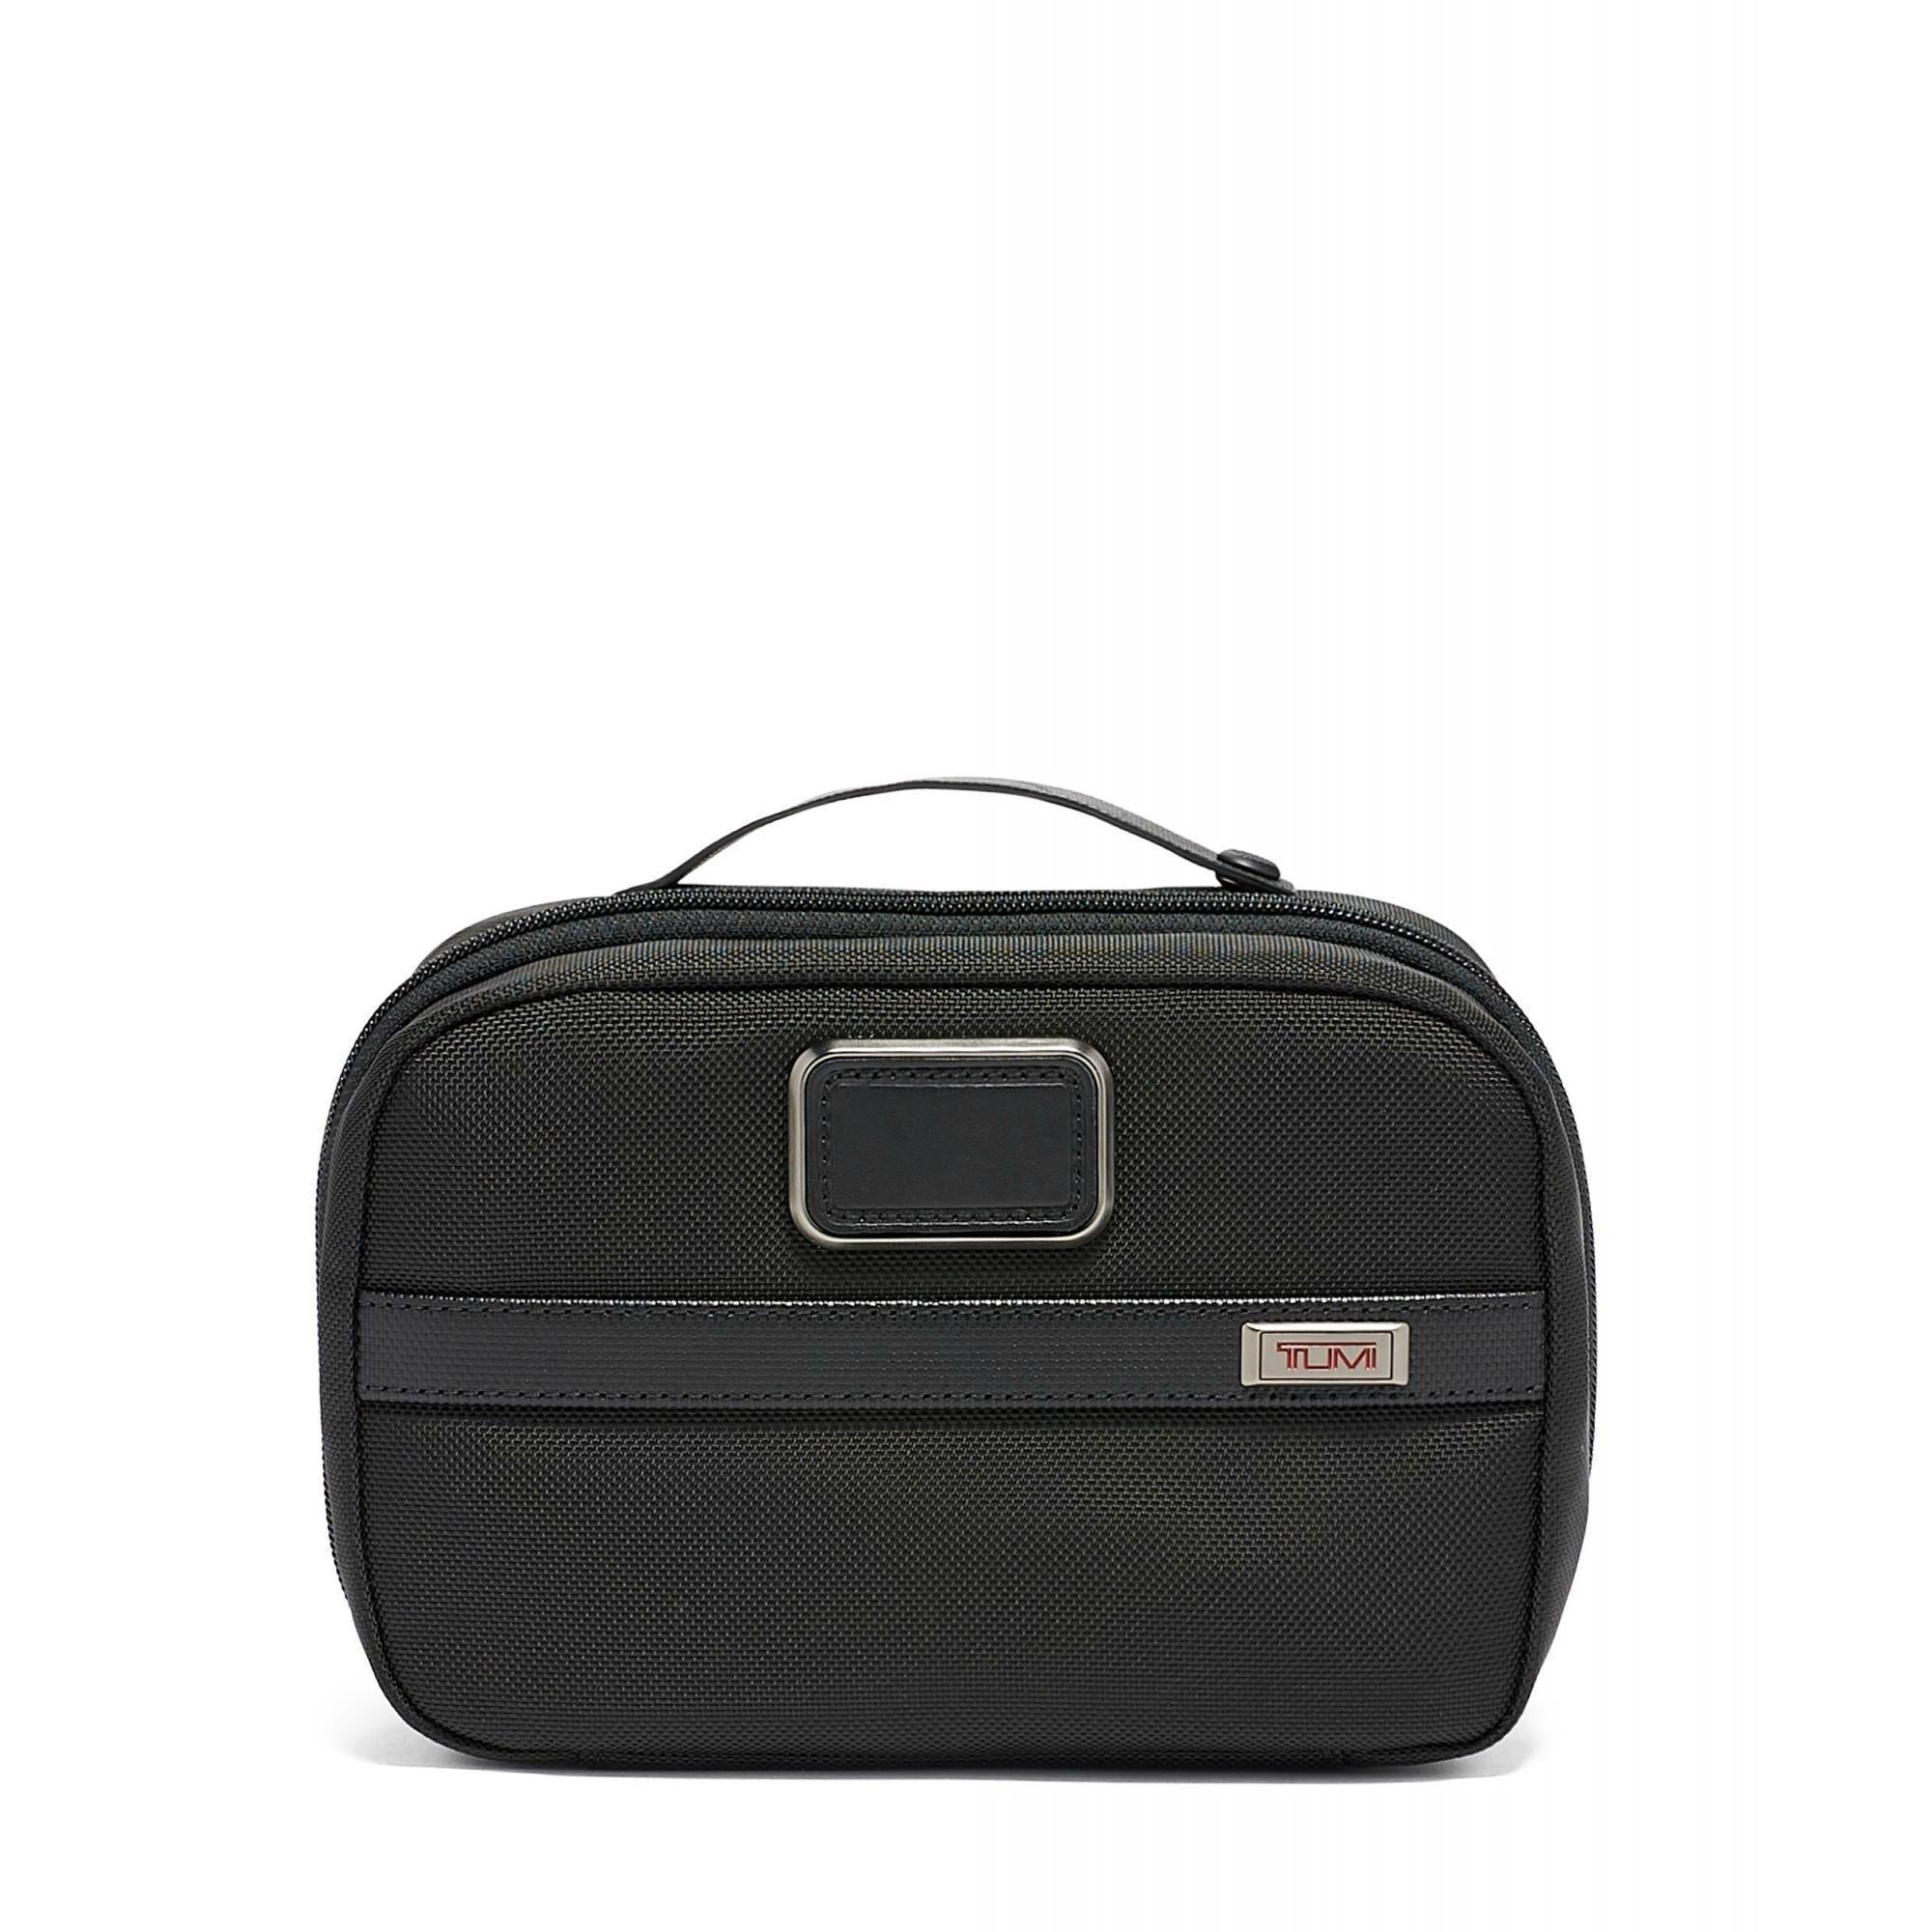 TUMI 3 Travel Kit – Luggage Pros